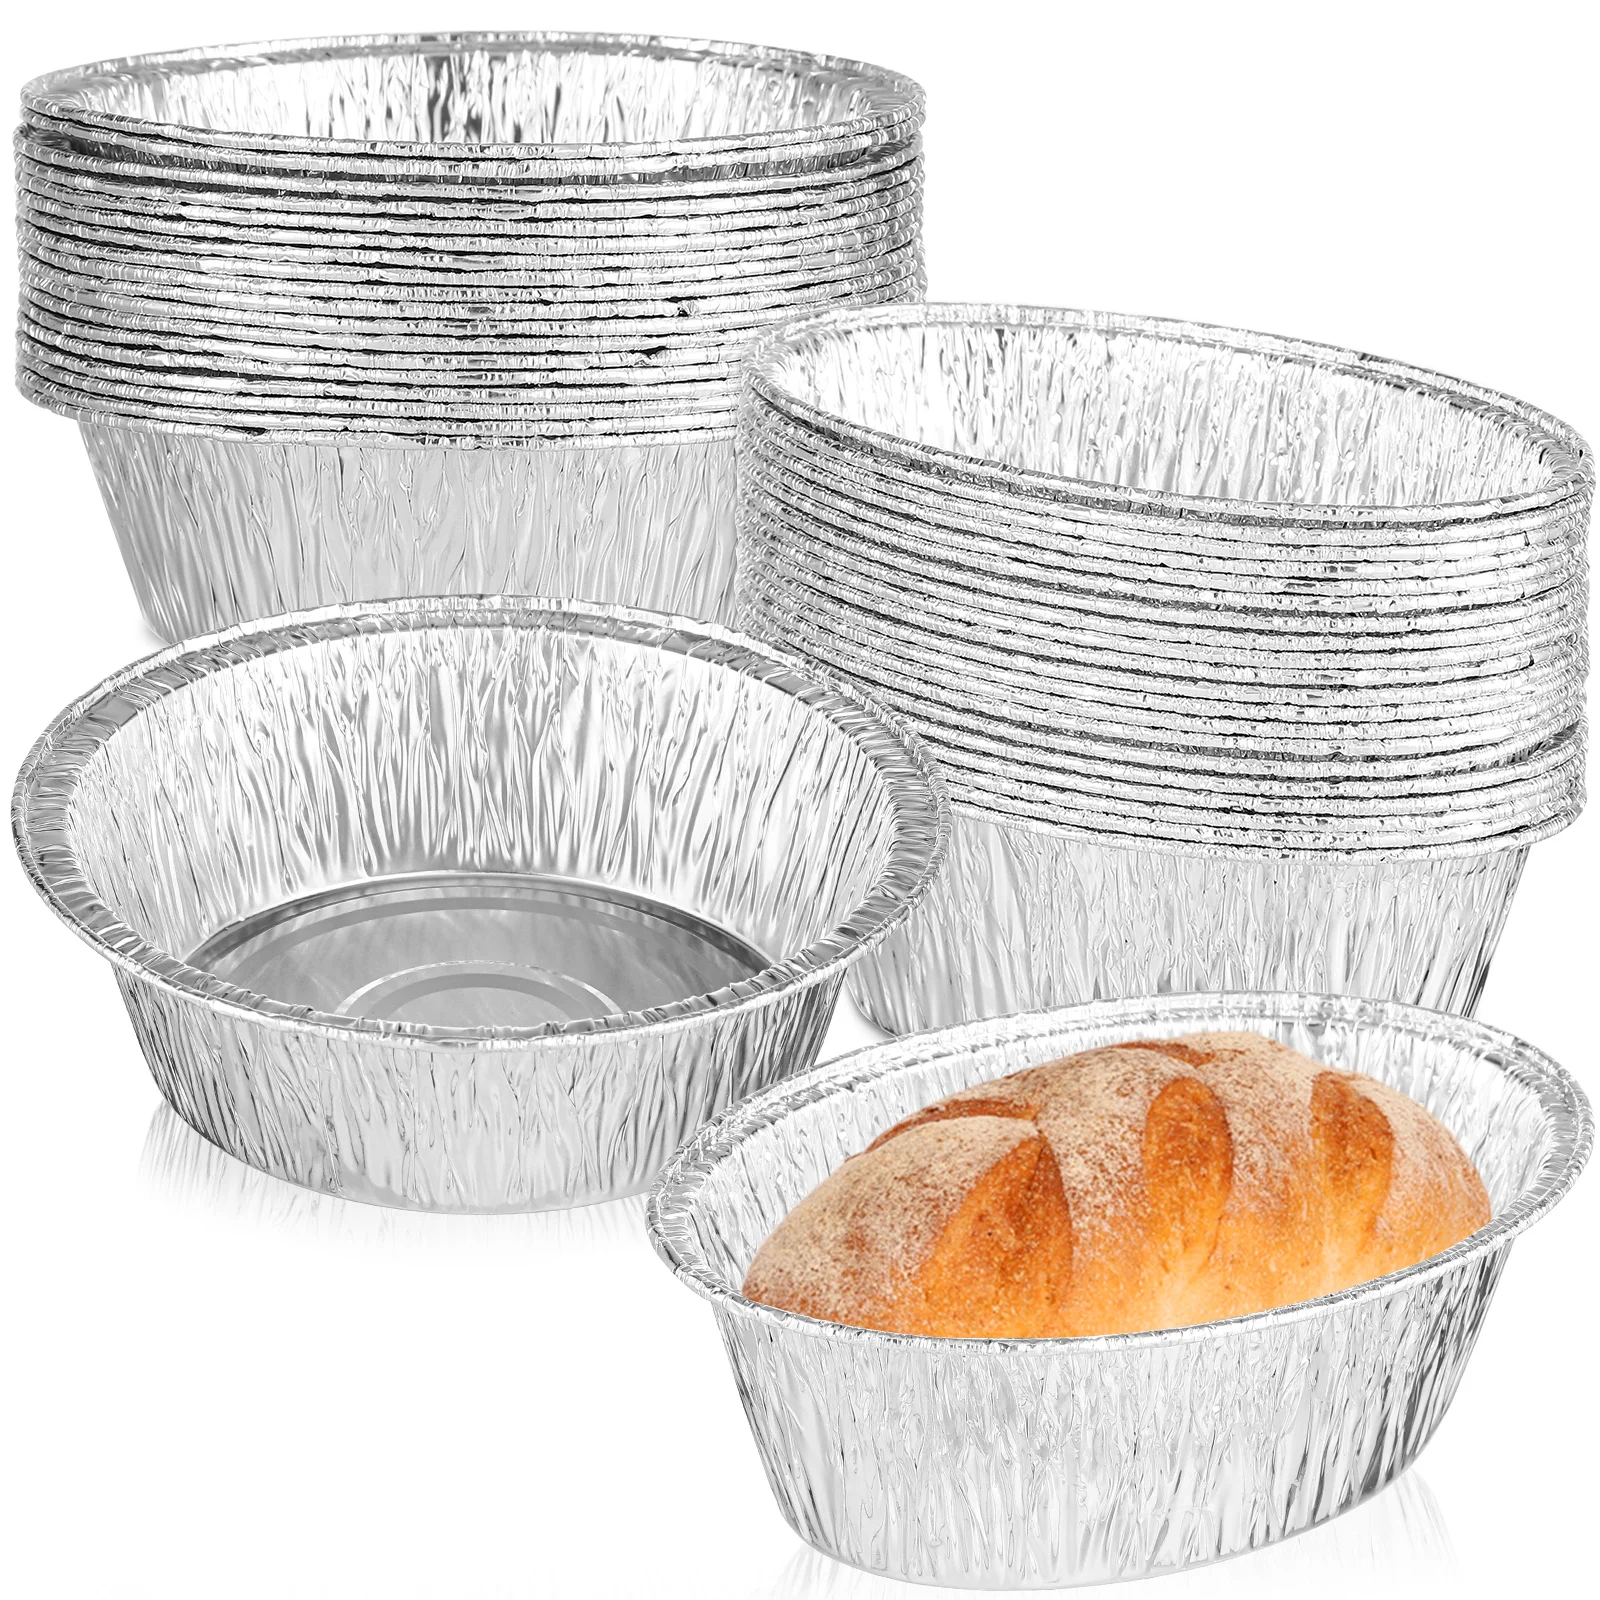 40 шт. Тарелки из фольги для пирогов Одноразовые Подносы для пирогов Прямоугольная алюминиевая форма для выпечки хлеба